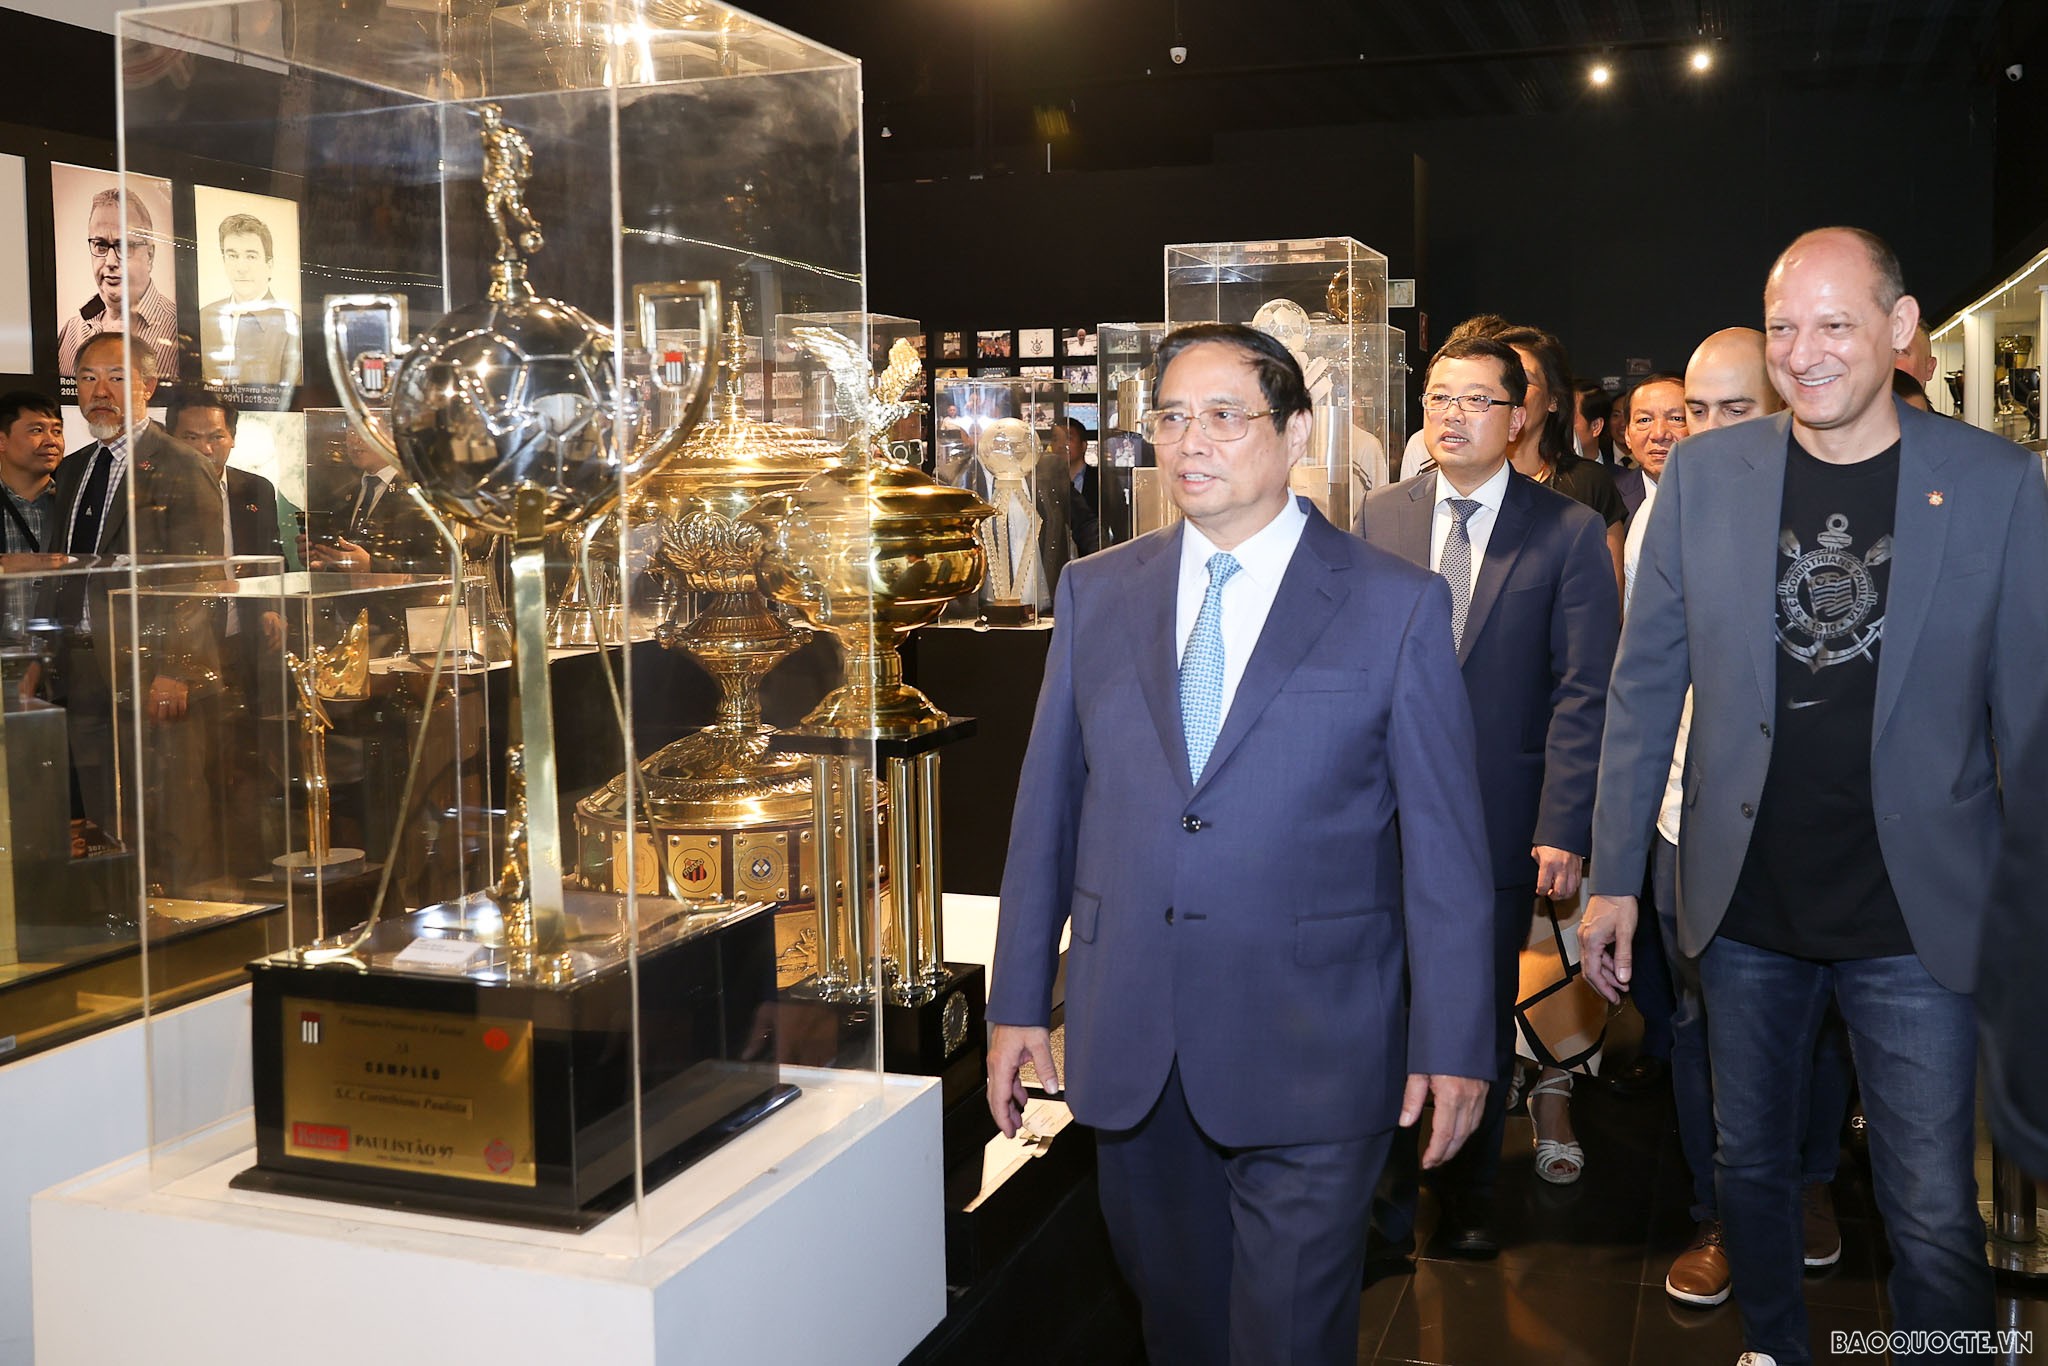 Thủ tướng Phạm Minh Chính thăm câu lạc bộ bóng đá hàng đầu của Brazil